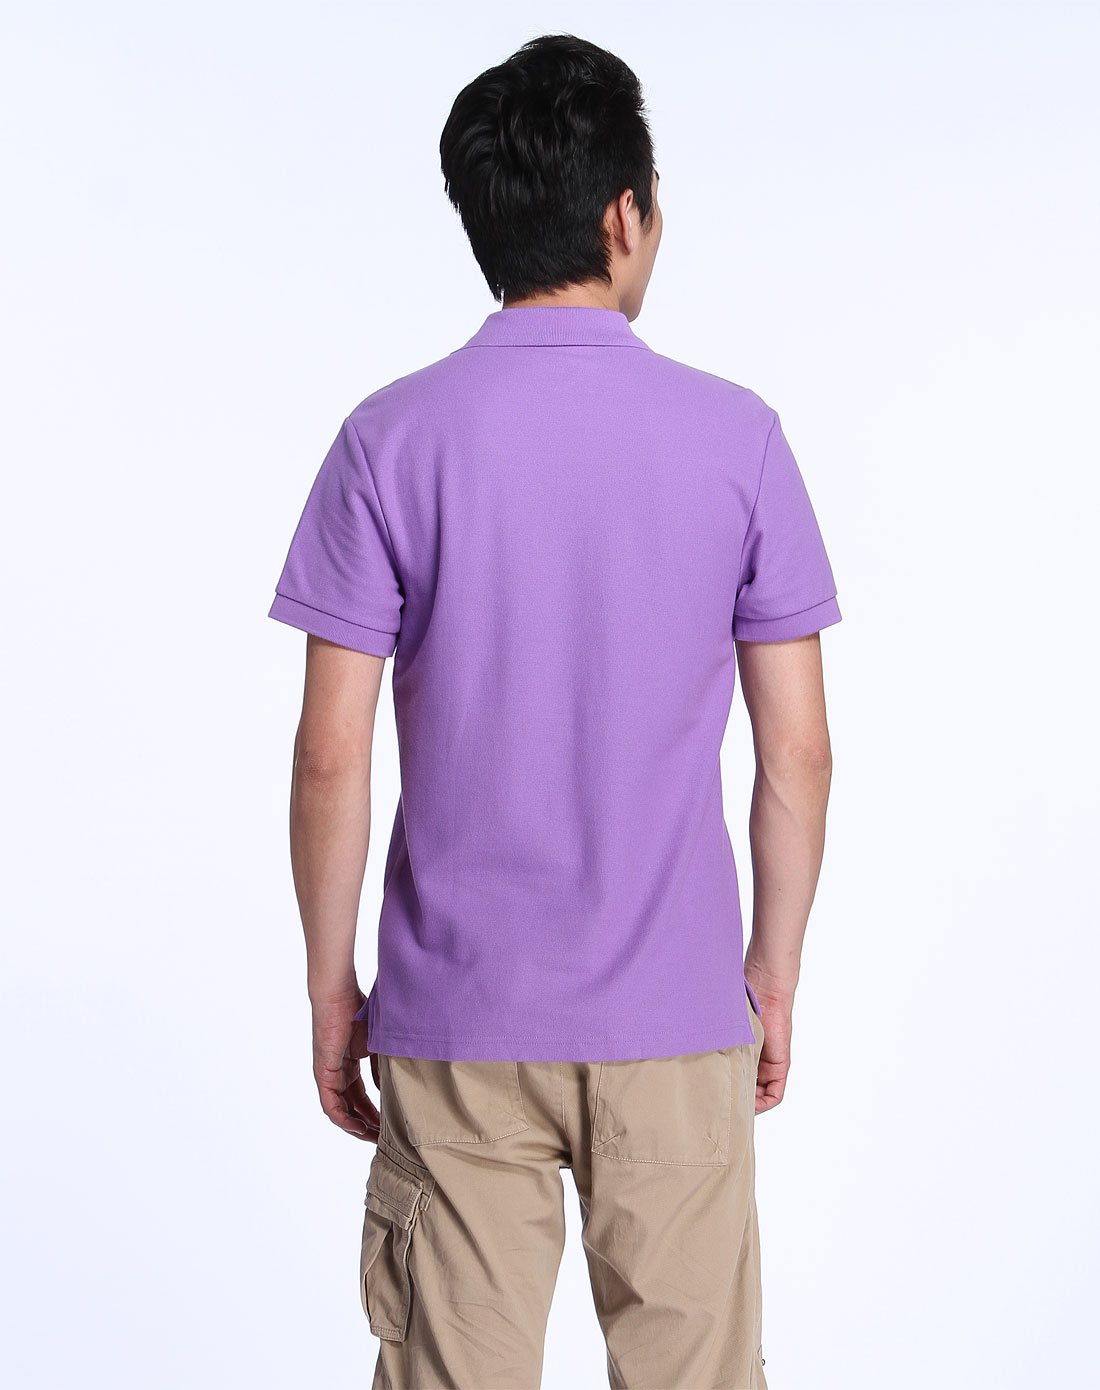 耐克nike男装专场-浅紫色休闲短袖polo衫